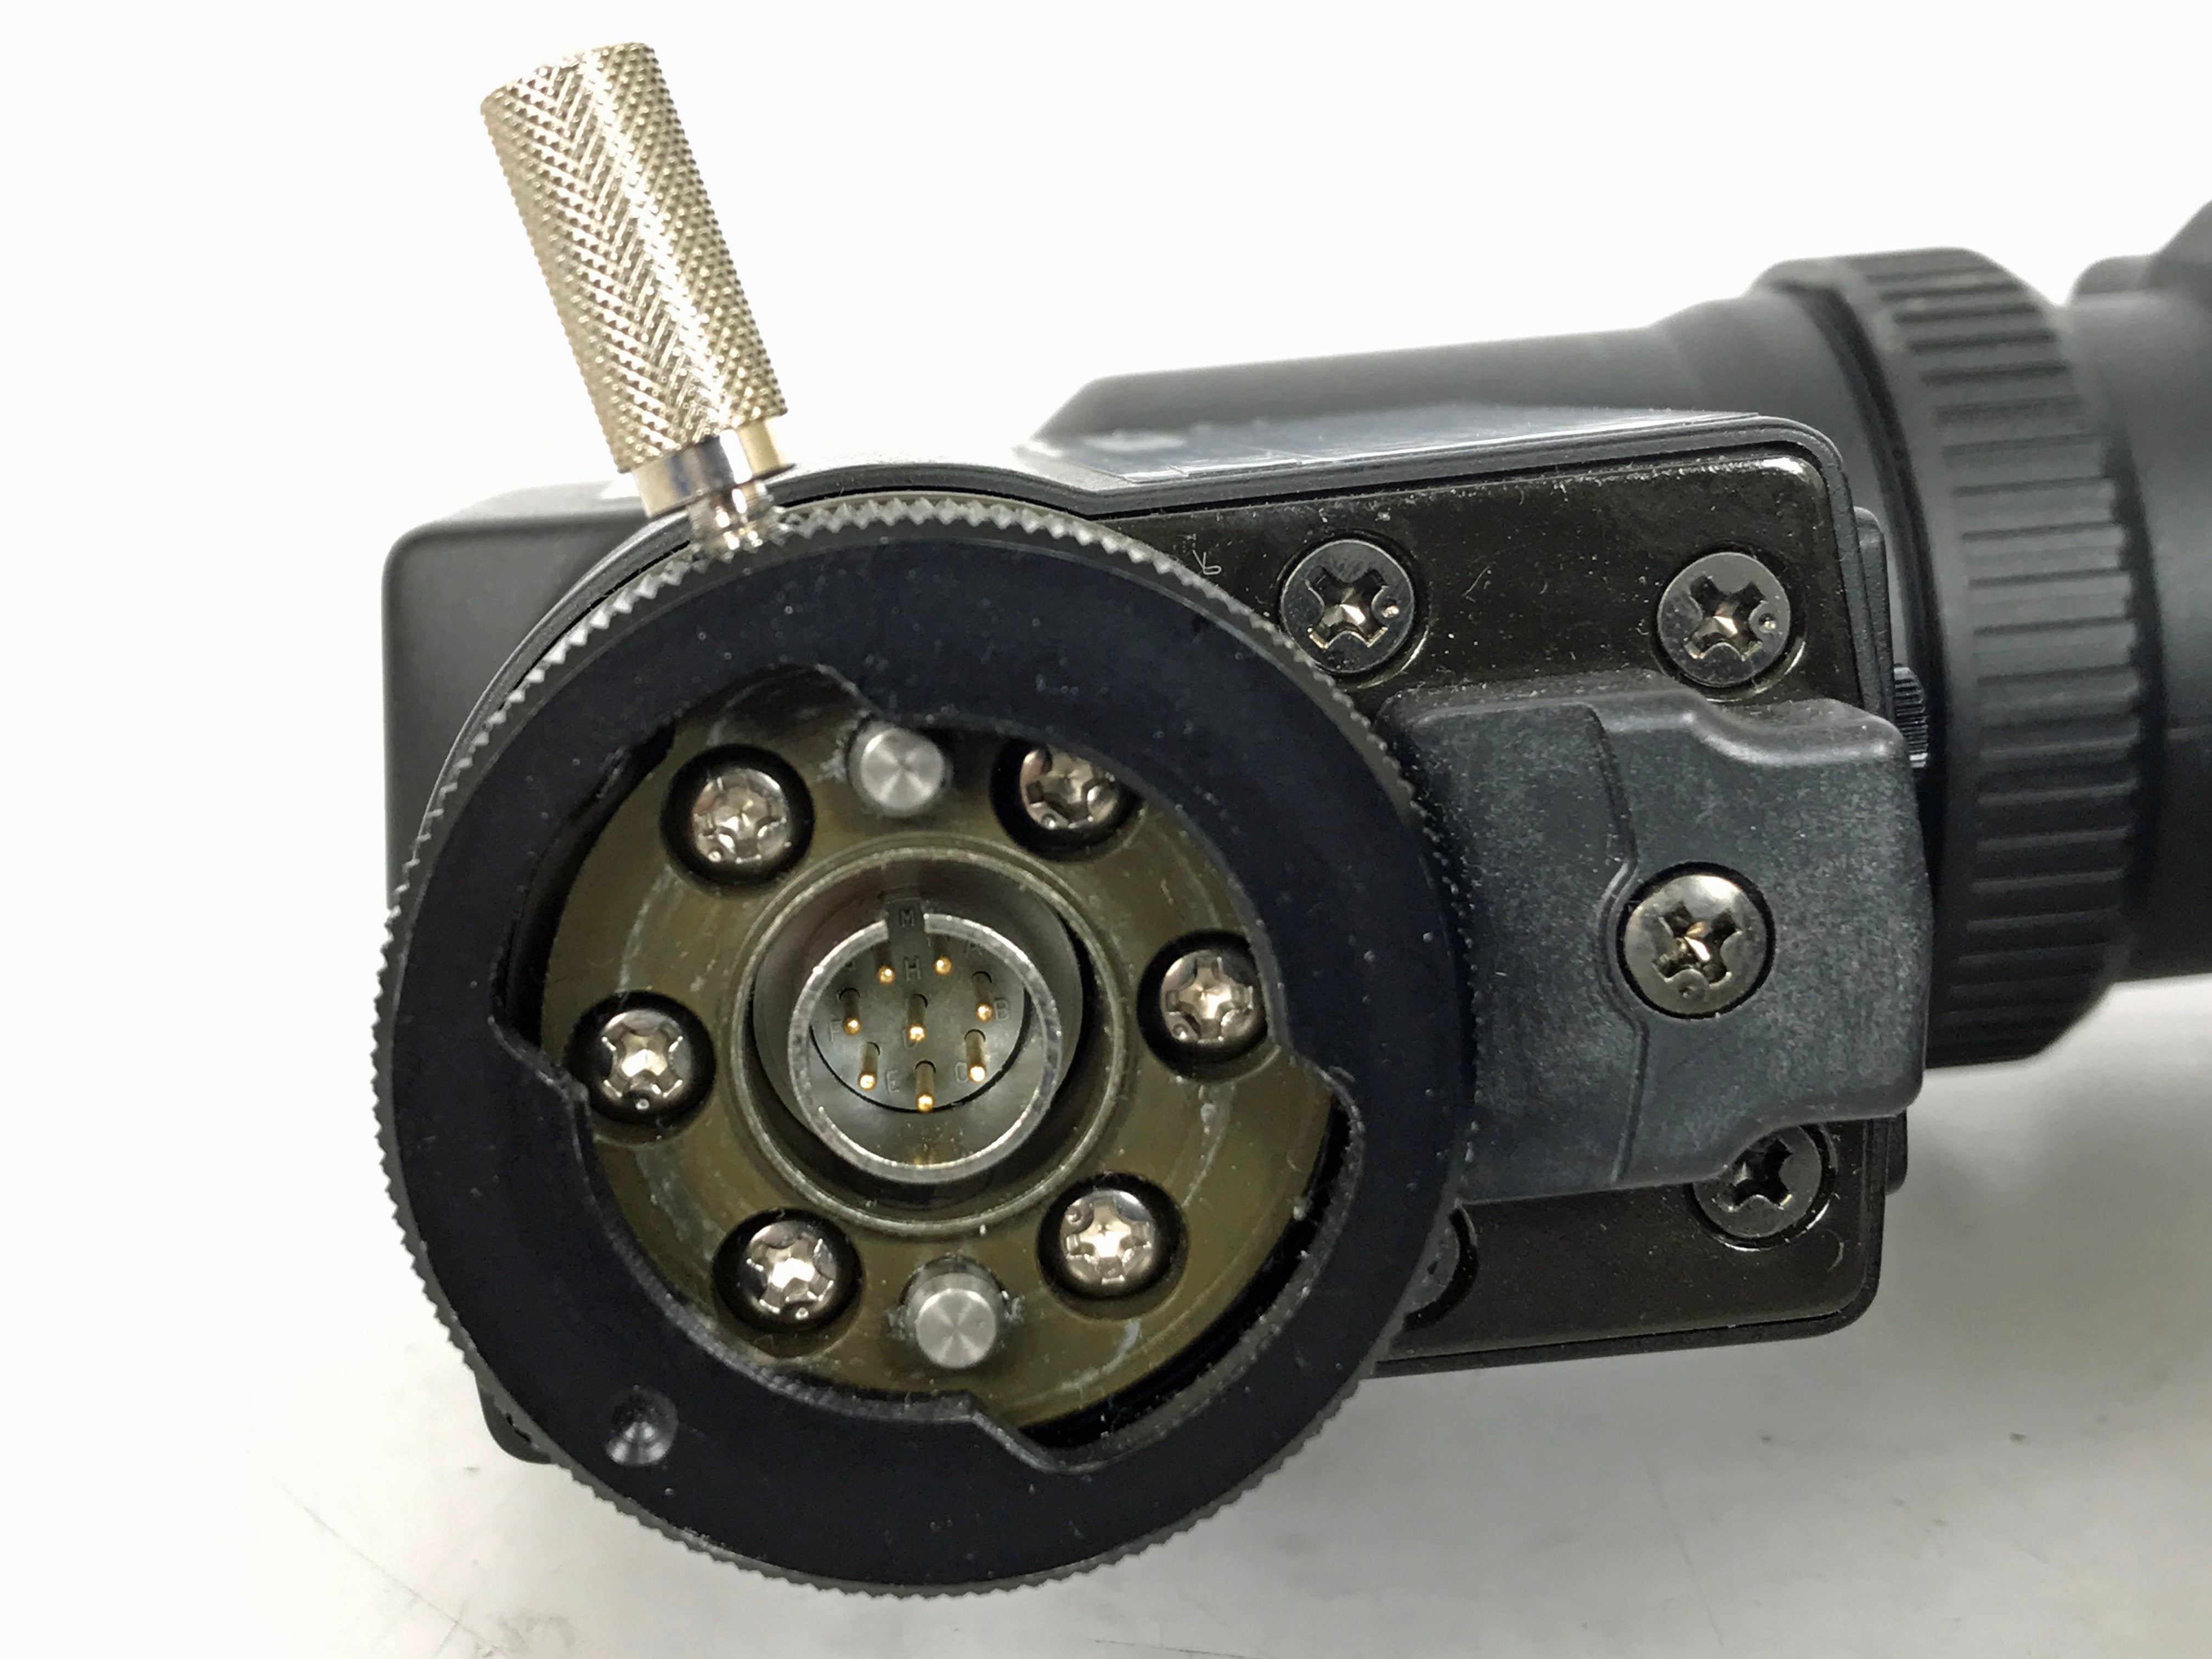 Hitachi GM-9 Video Camera Viewfinder